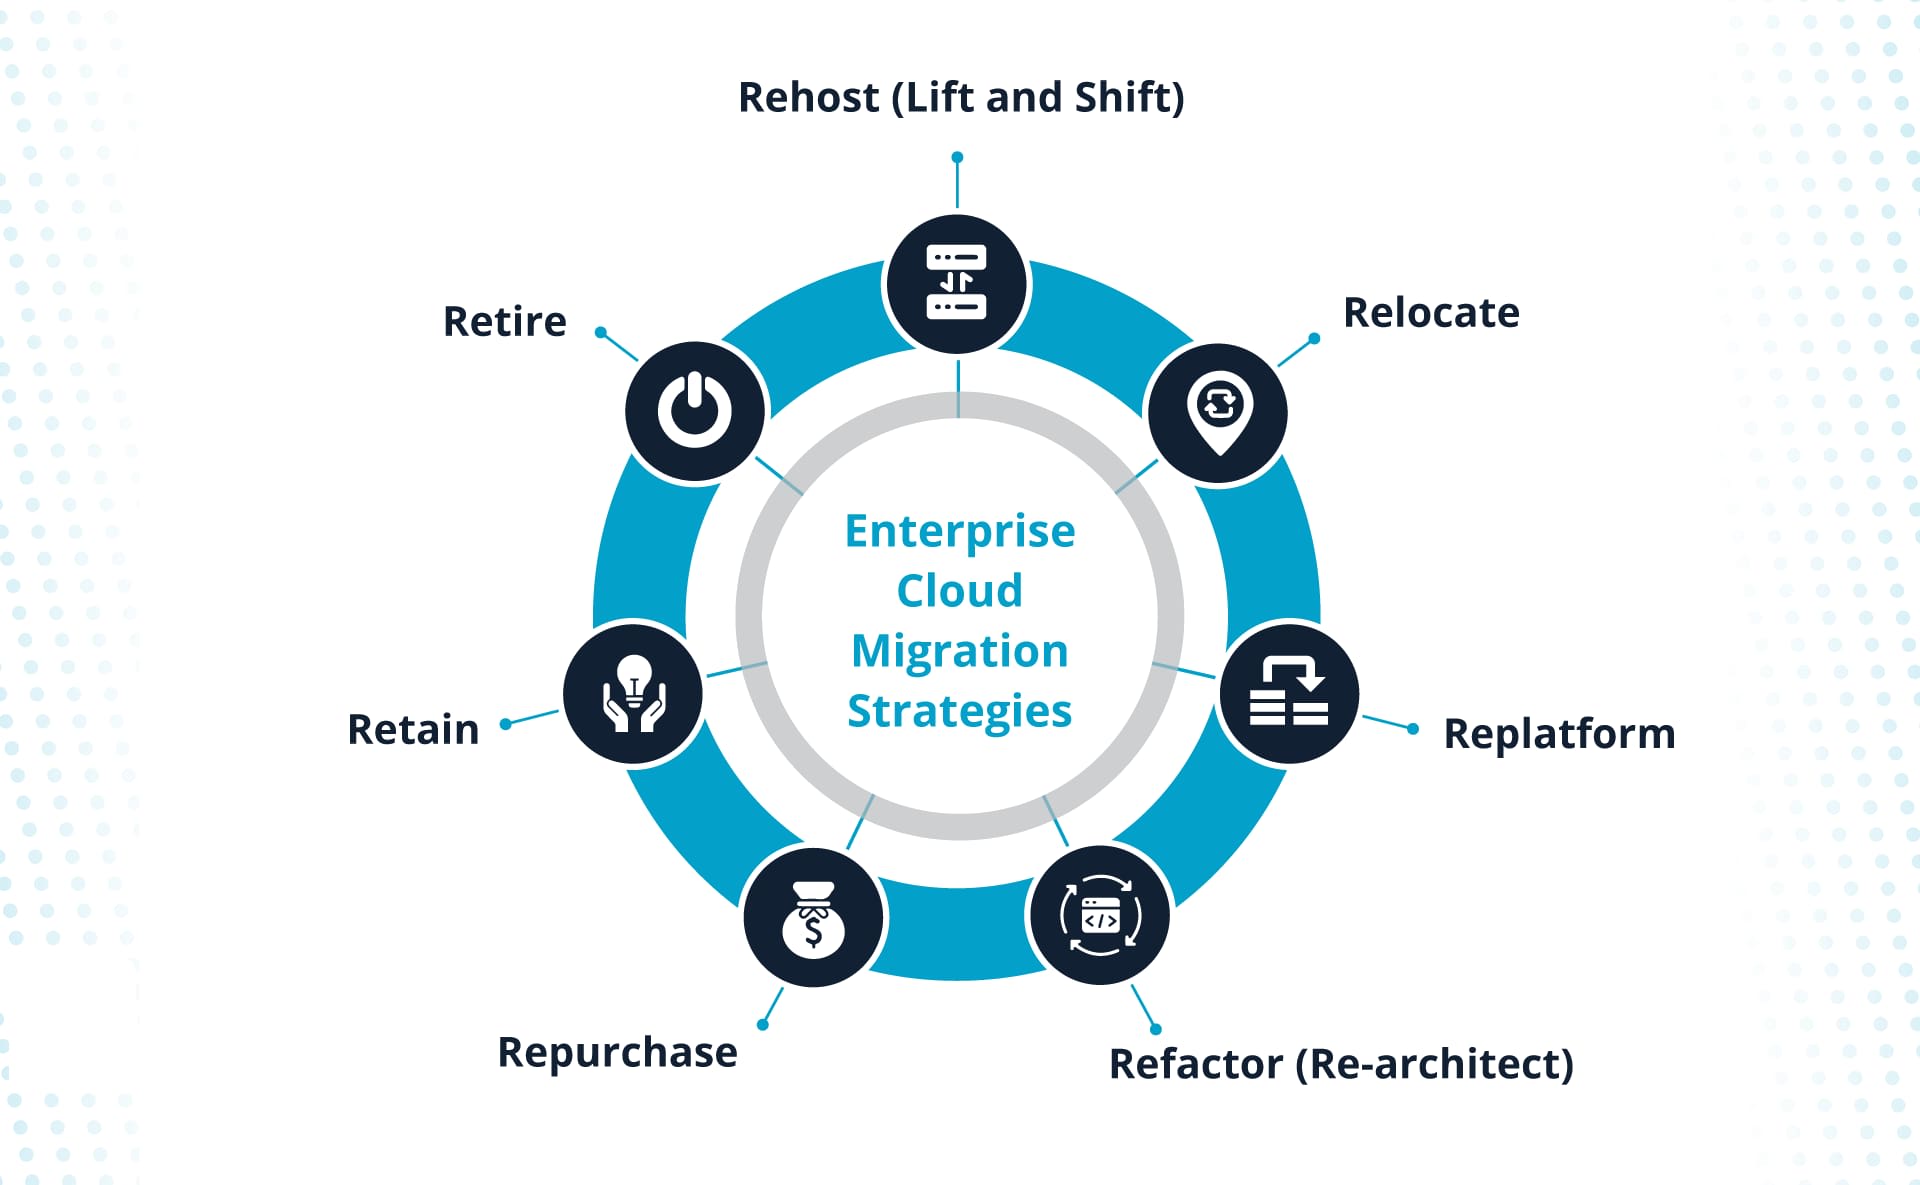 Seven common enterprise cloud migration strategies.